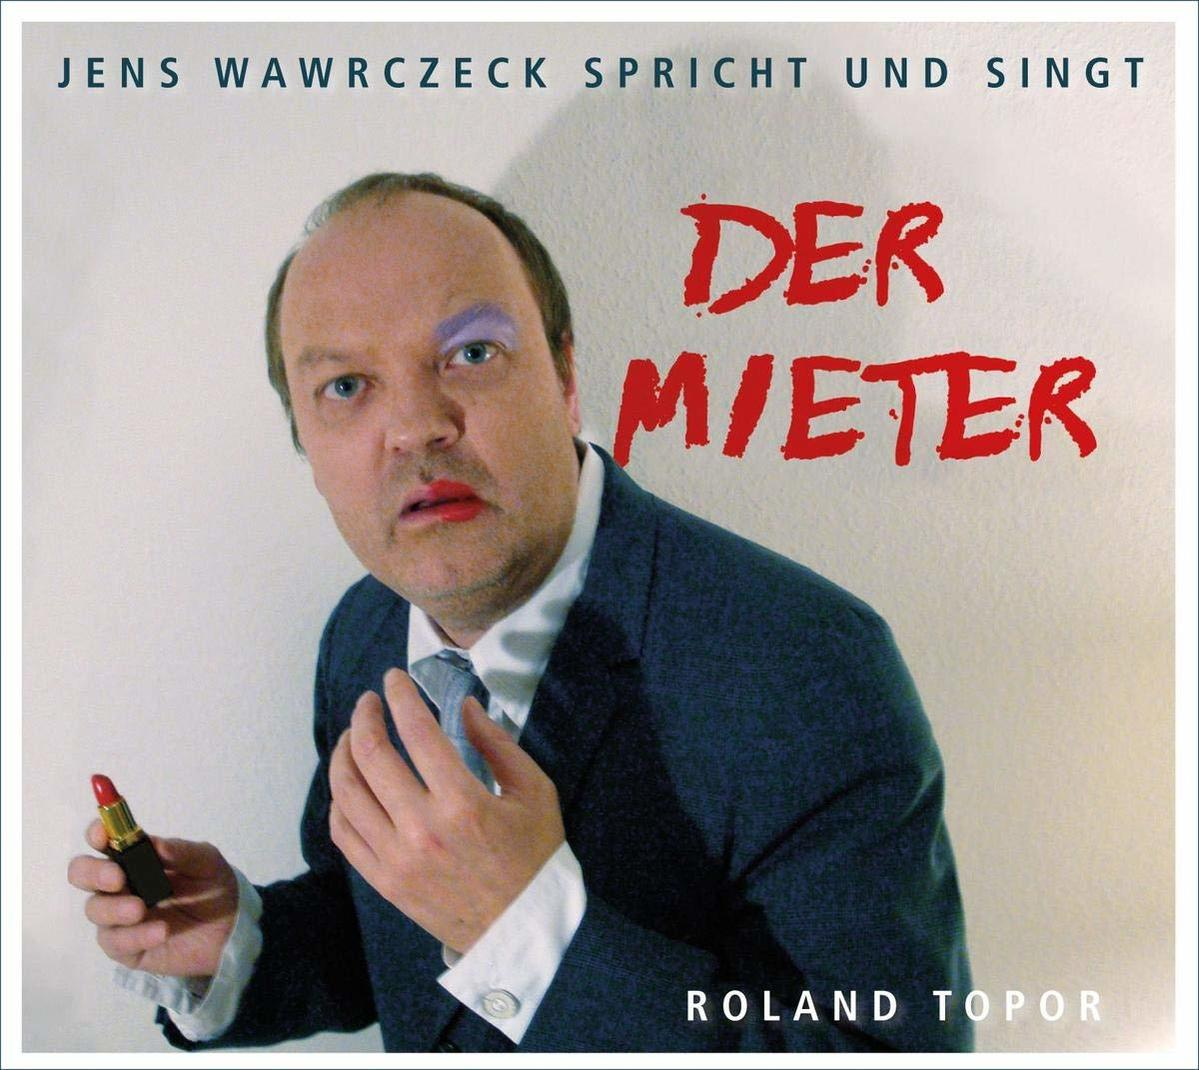 Der Topor Wawrczeck, - - Jens Mieter (CD) Roland